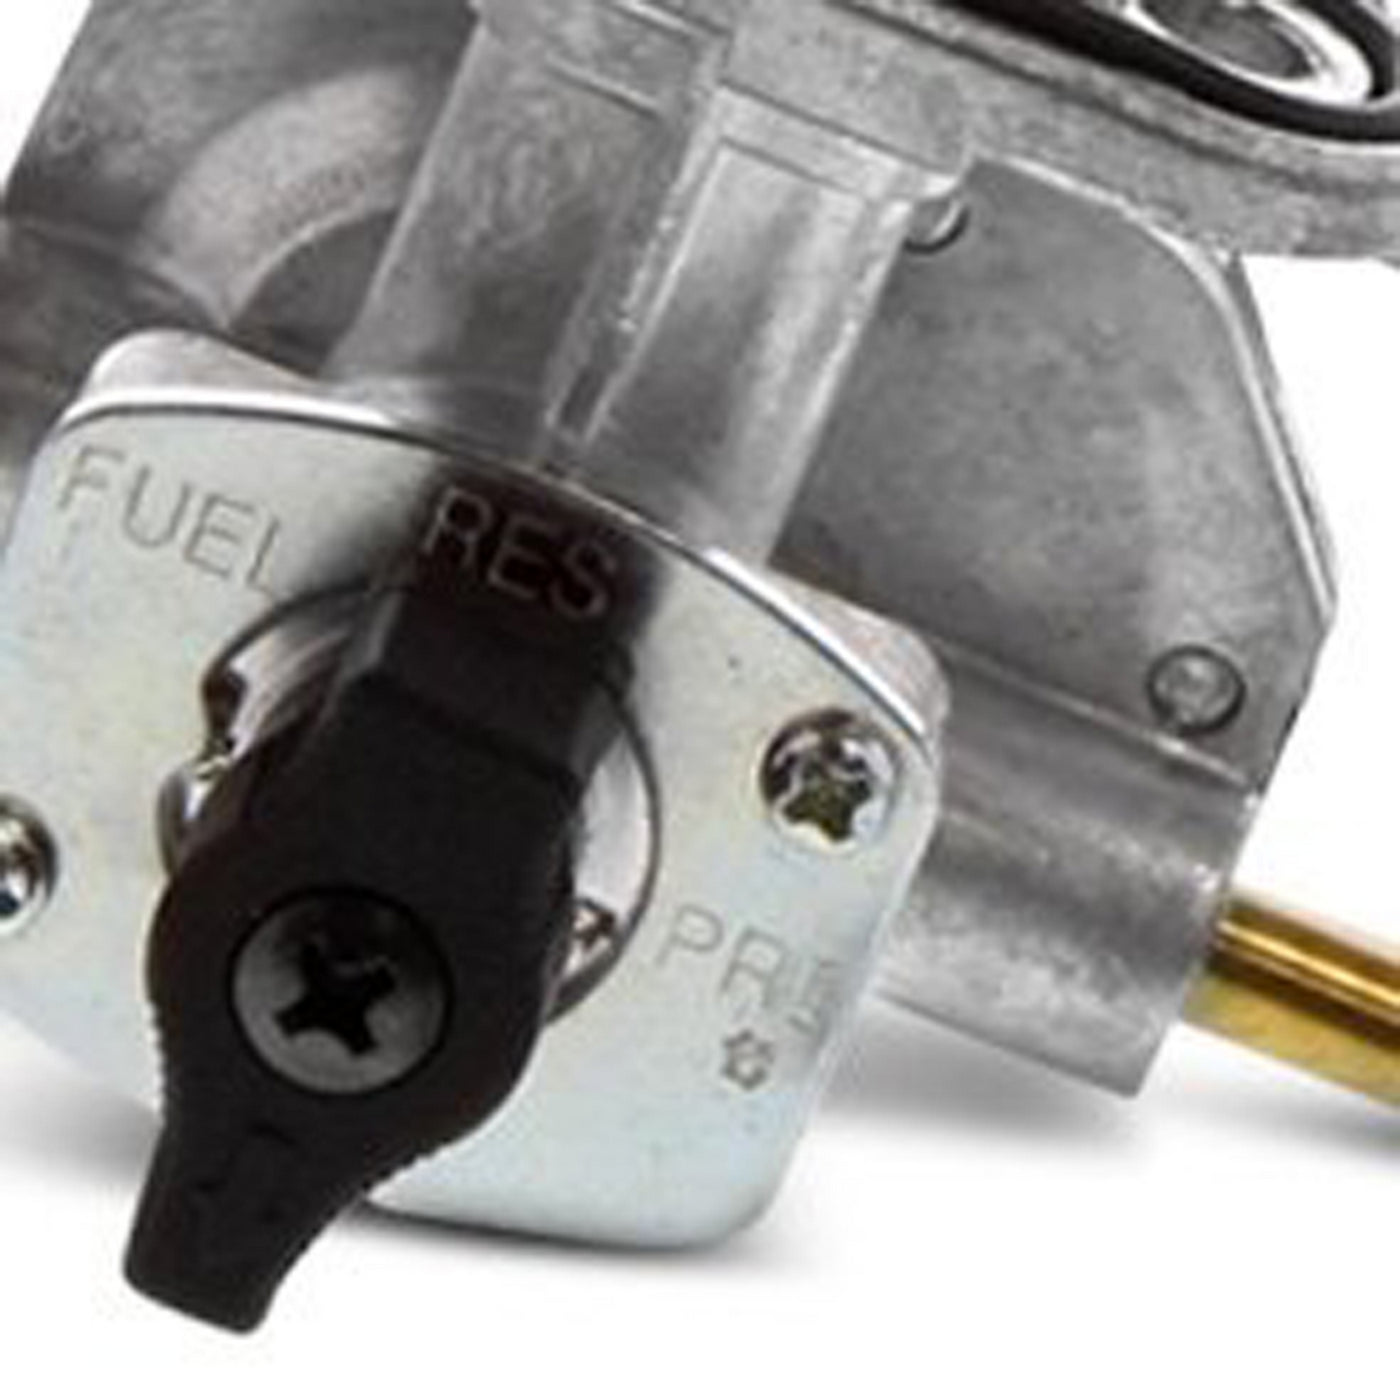 Fuel Star FS101-0117 Fuel Valve Kit #FS101-0117